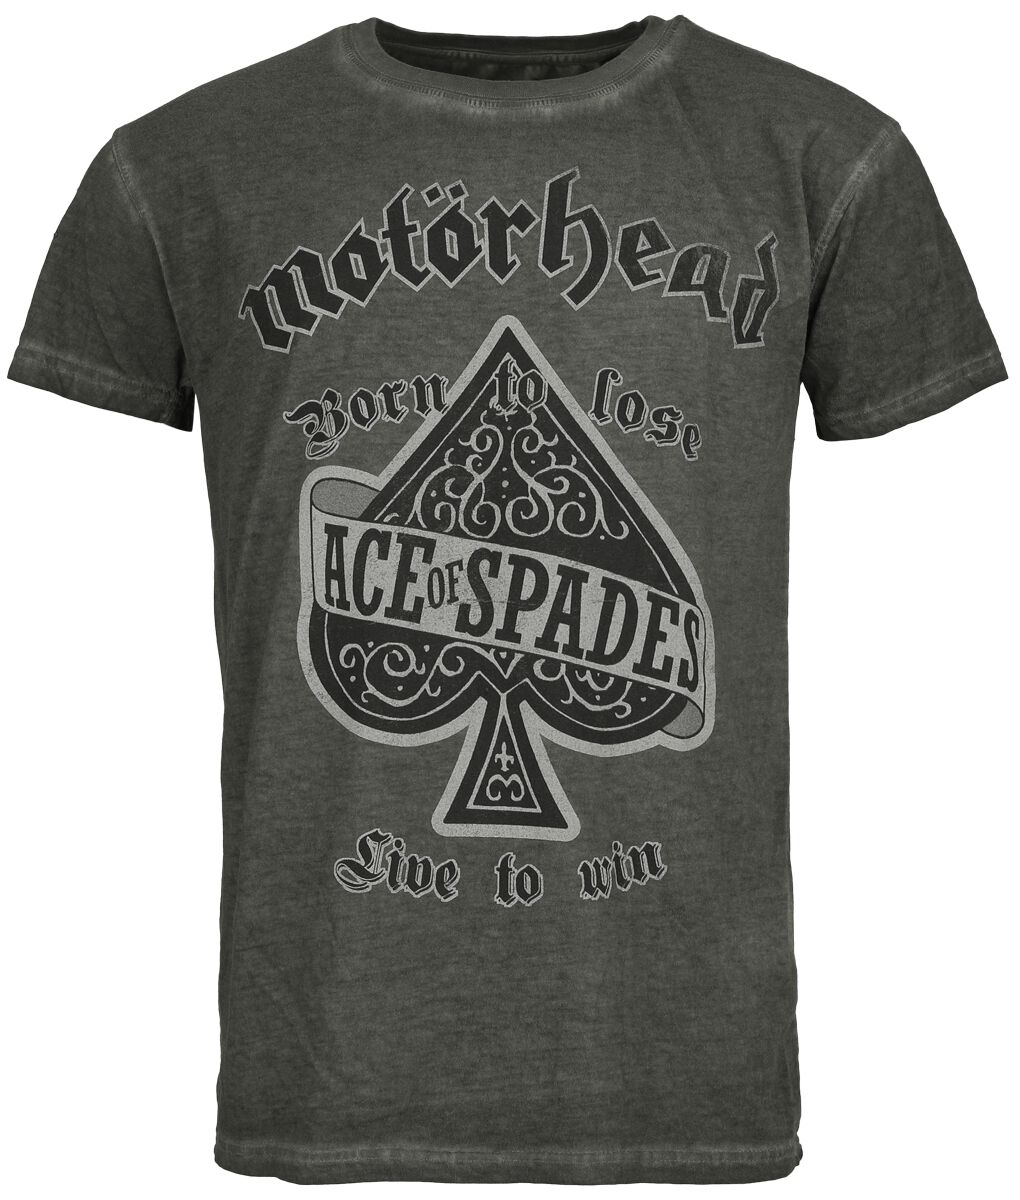 Motörhead T-Shirt - Ace Of Spades - S bis 4XL - für Männer - Größe S - anthrazit  - Lizenziertes Merchandise!